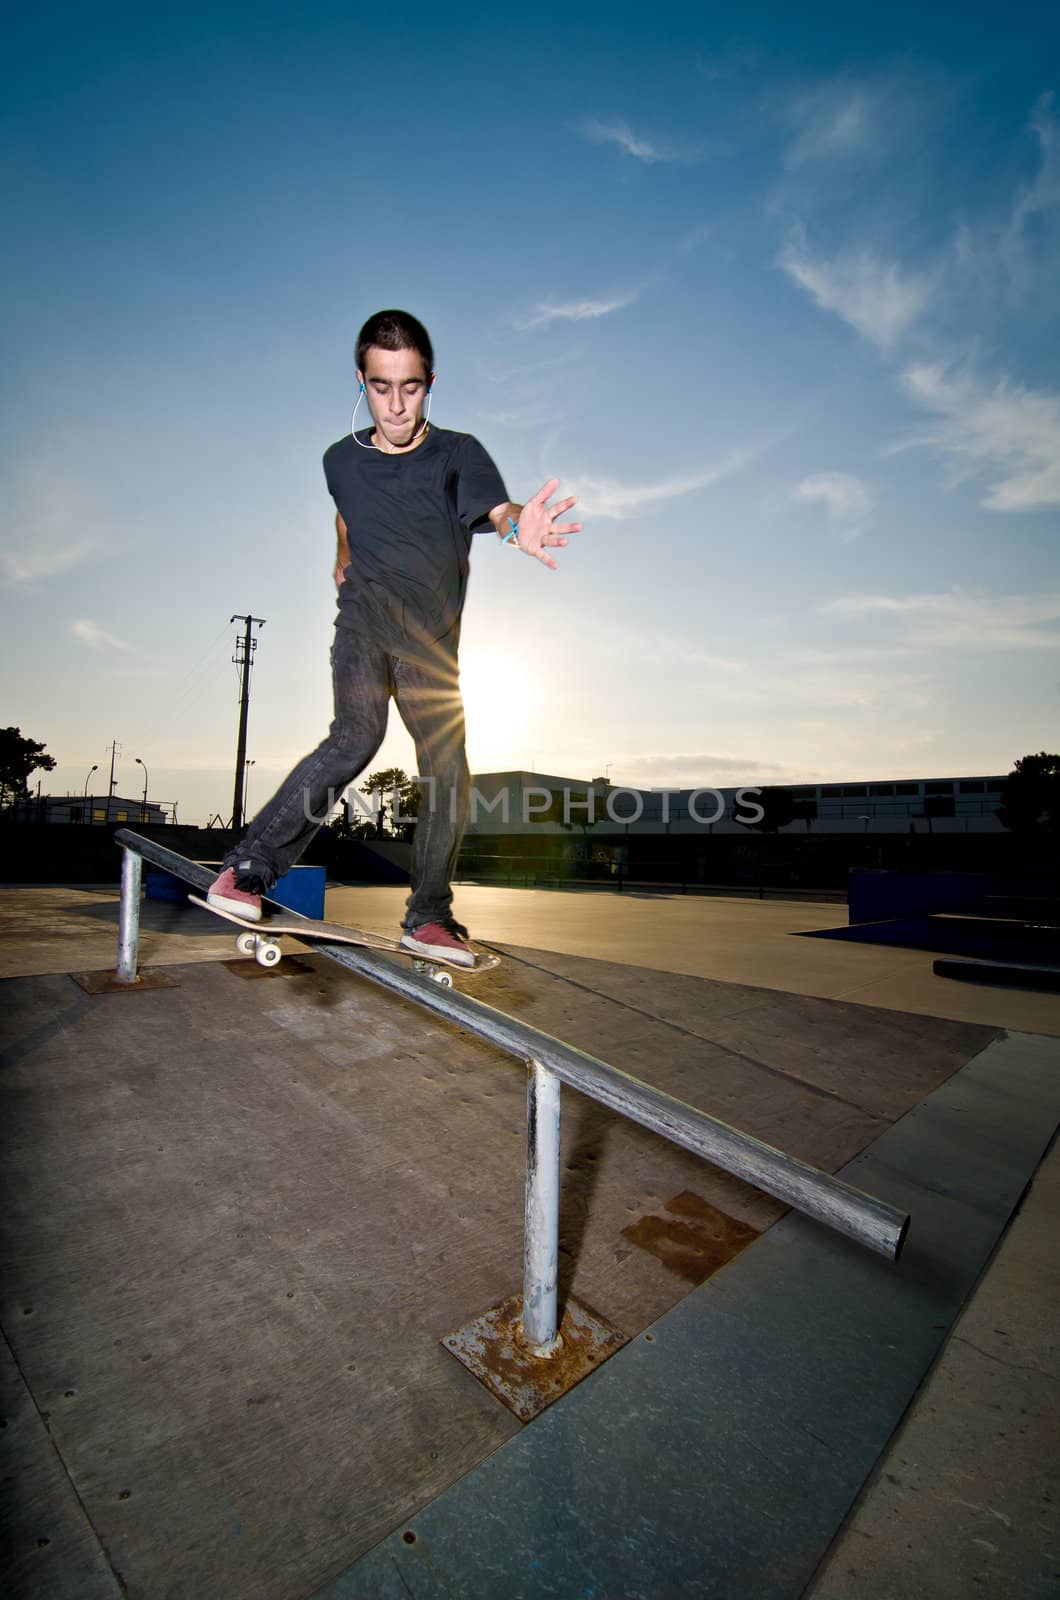 Skateboarder on a slide by homydesign